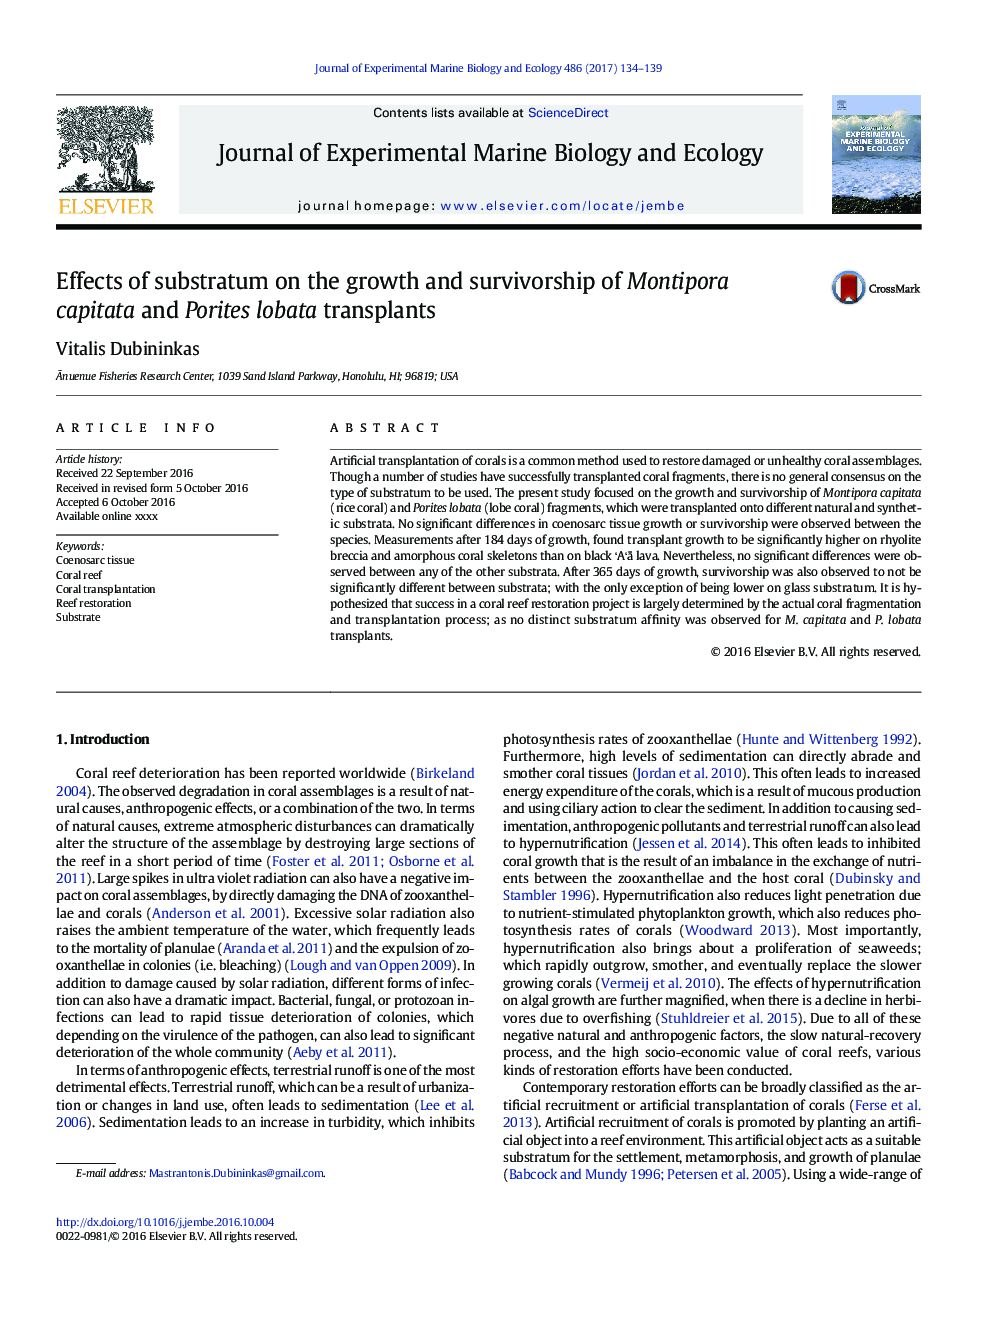 اثرات زیرلایه بر رشد و بقای capitata و Montipora و Porites lobata transplants